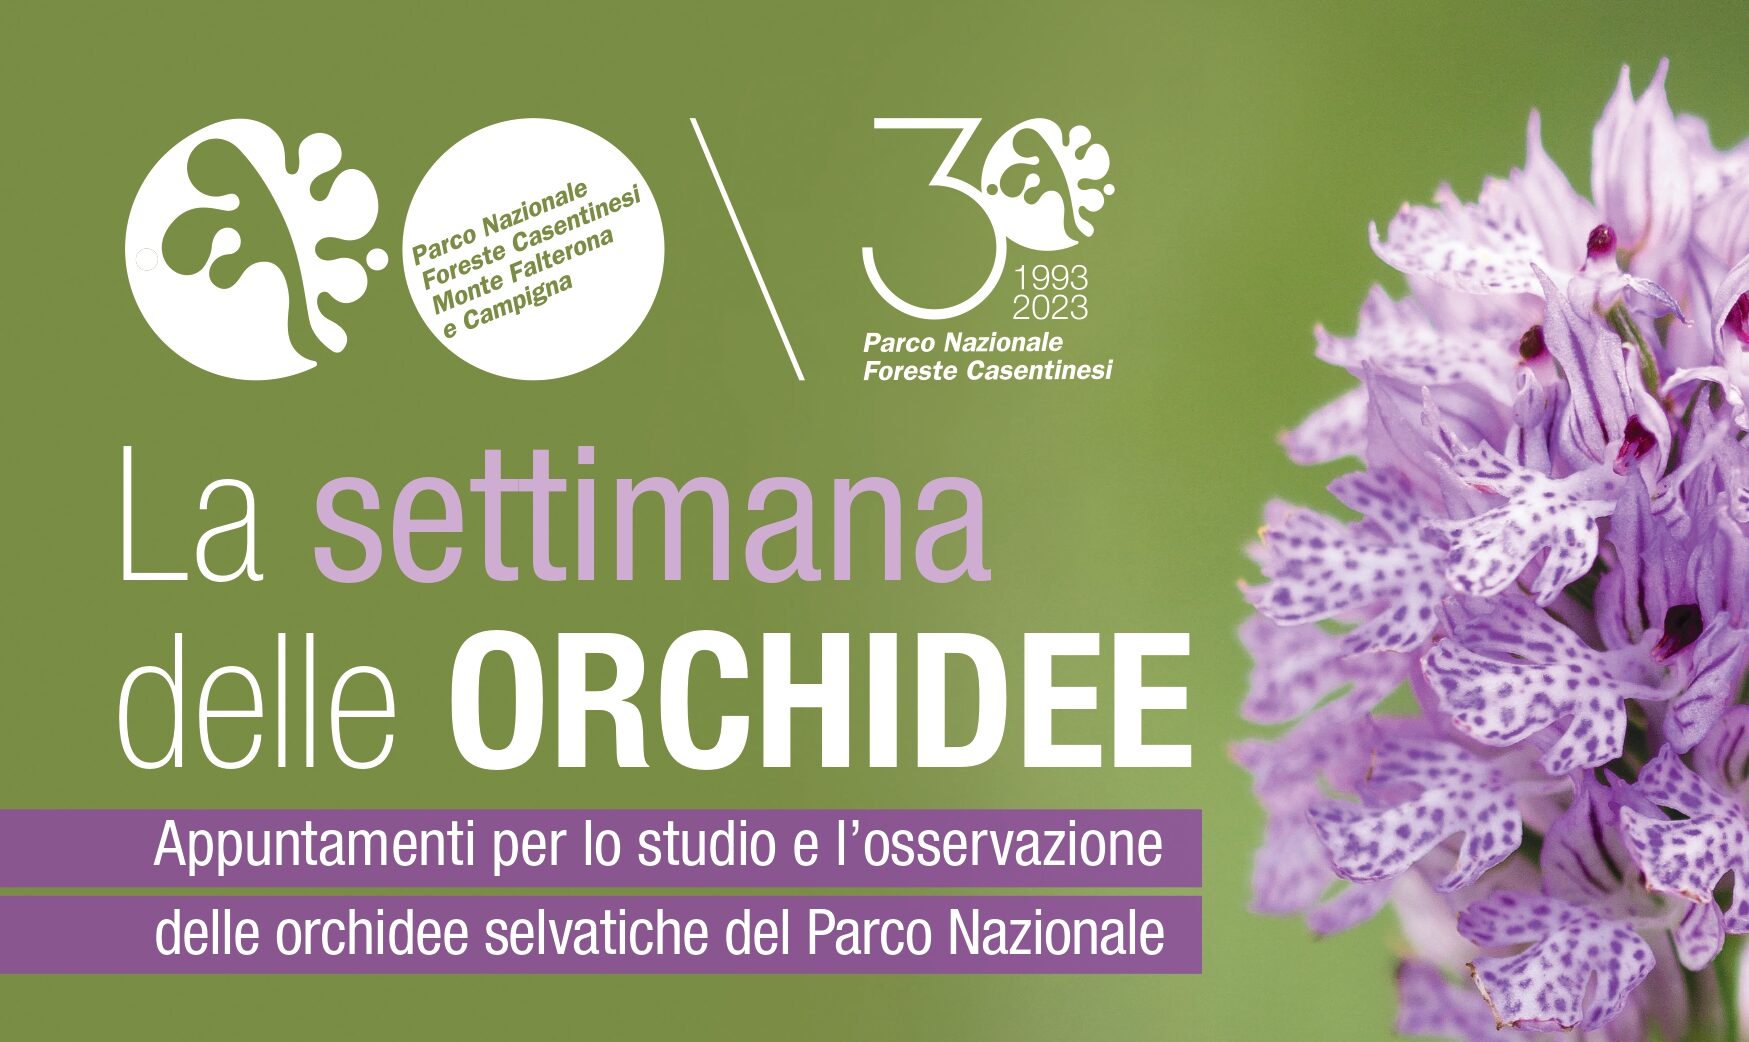 Settimana delle orchidee selvatiche nelle Foreste Casentinesi: annullato l’evento di giovedì 25 maggio